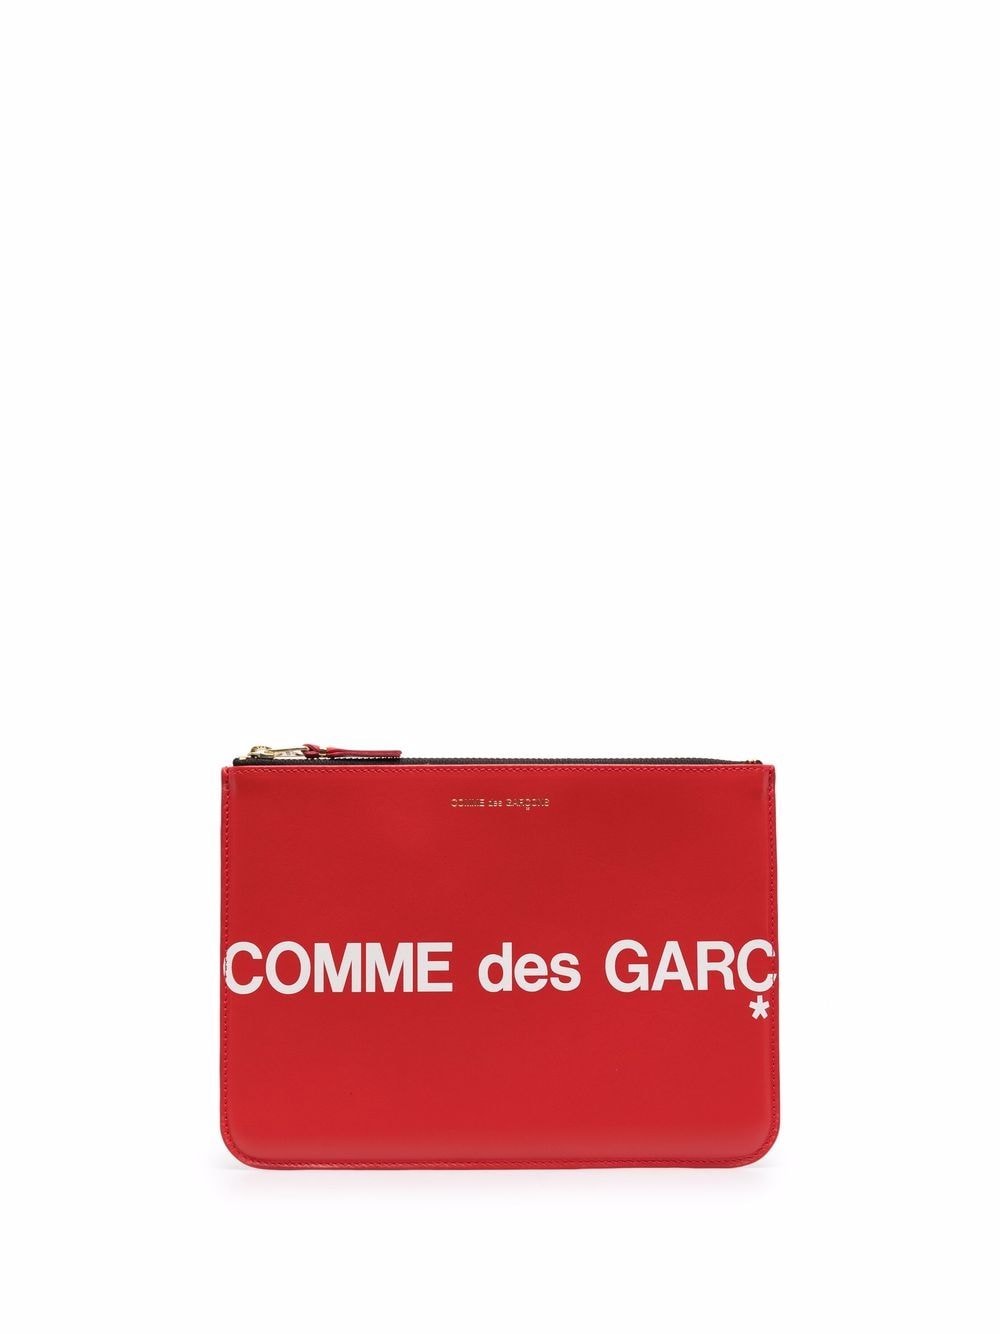 фото Comme des garçons клатч с логотипом